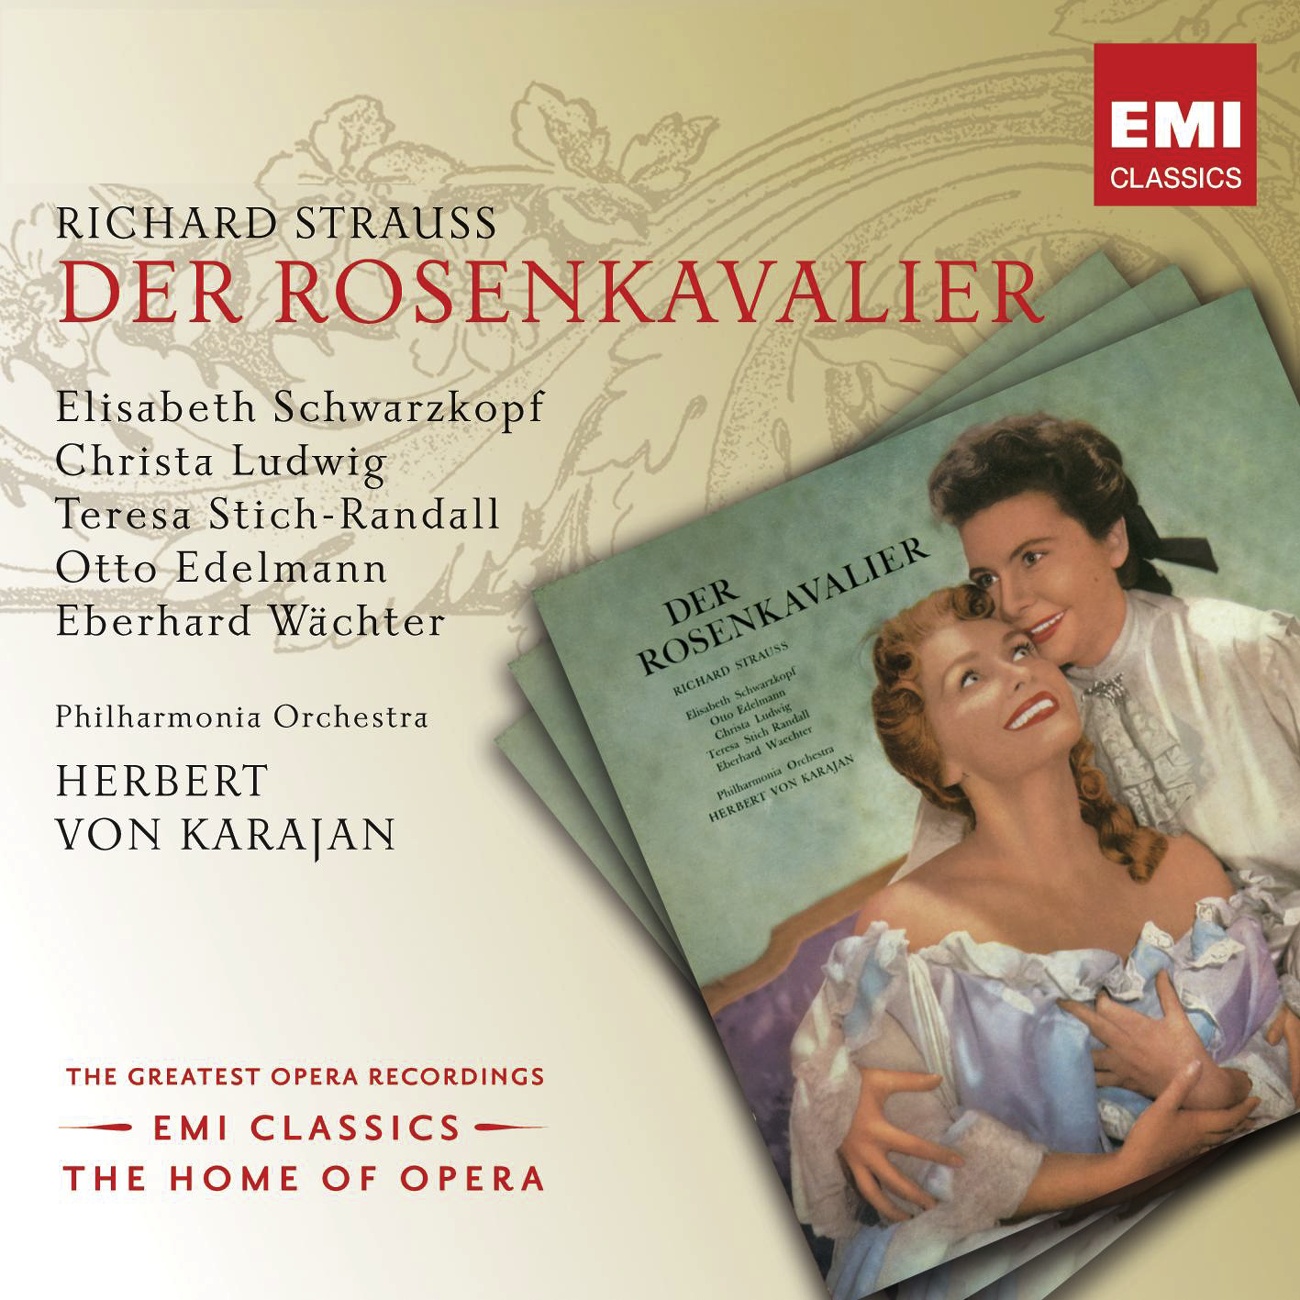 Der Rosenkavalier (2001 Digital Remaster), Act II: Möcht' wissen, was Ihm dünkt von mir und Ihm (Sophie/Faninal/Ochs/Octavian/Marianne)